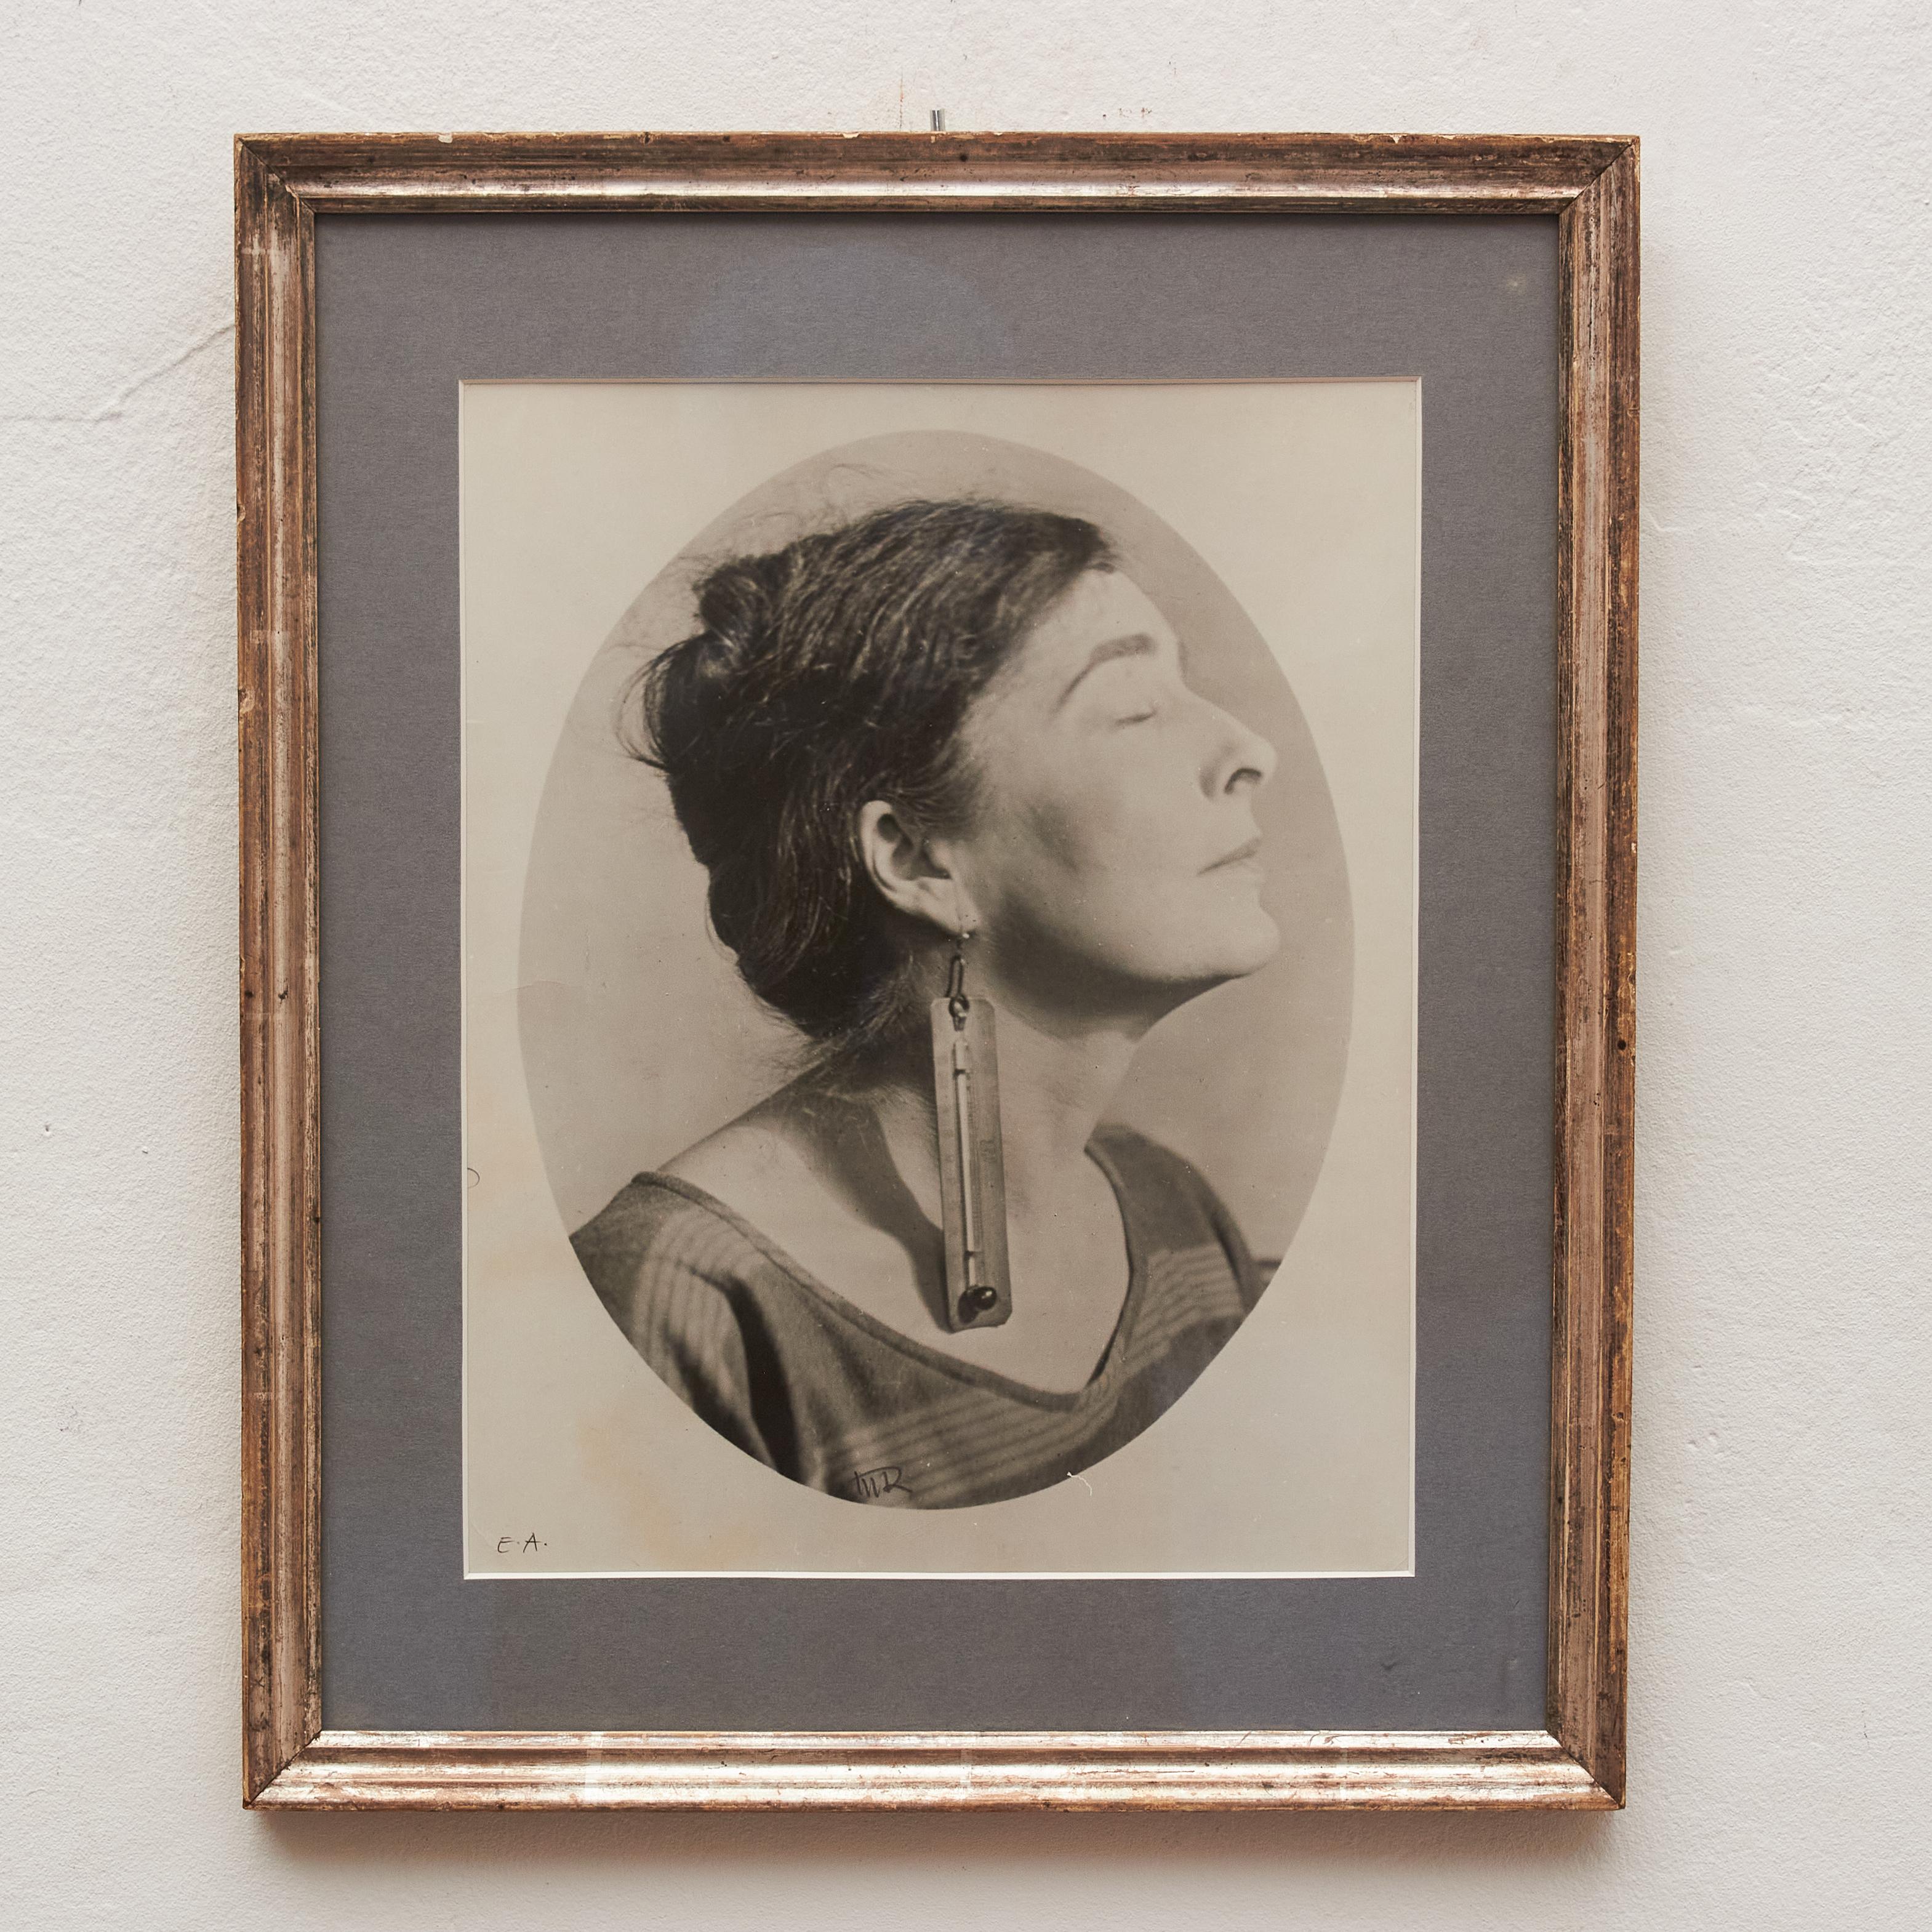 Plongez dans le surréalisme avec cette exceptionnelle photographie Epreuve de Artiste en noir et blanc du légendaire Man Ray. Portrait surréaliste d'une femme, méticuleusement encadré dans un cadre du début du XXe siècle, ce chef-d'œuvre témoigne de